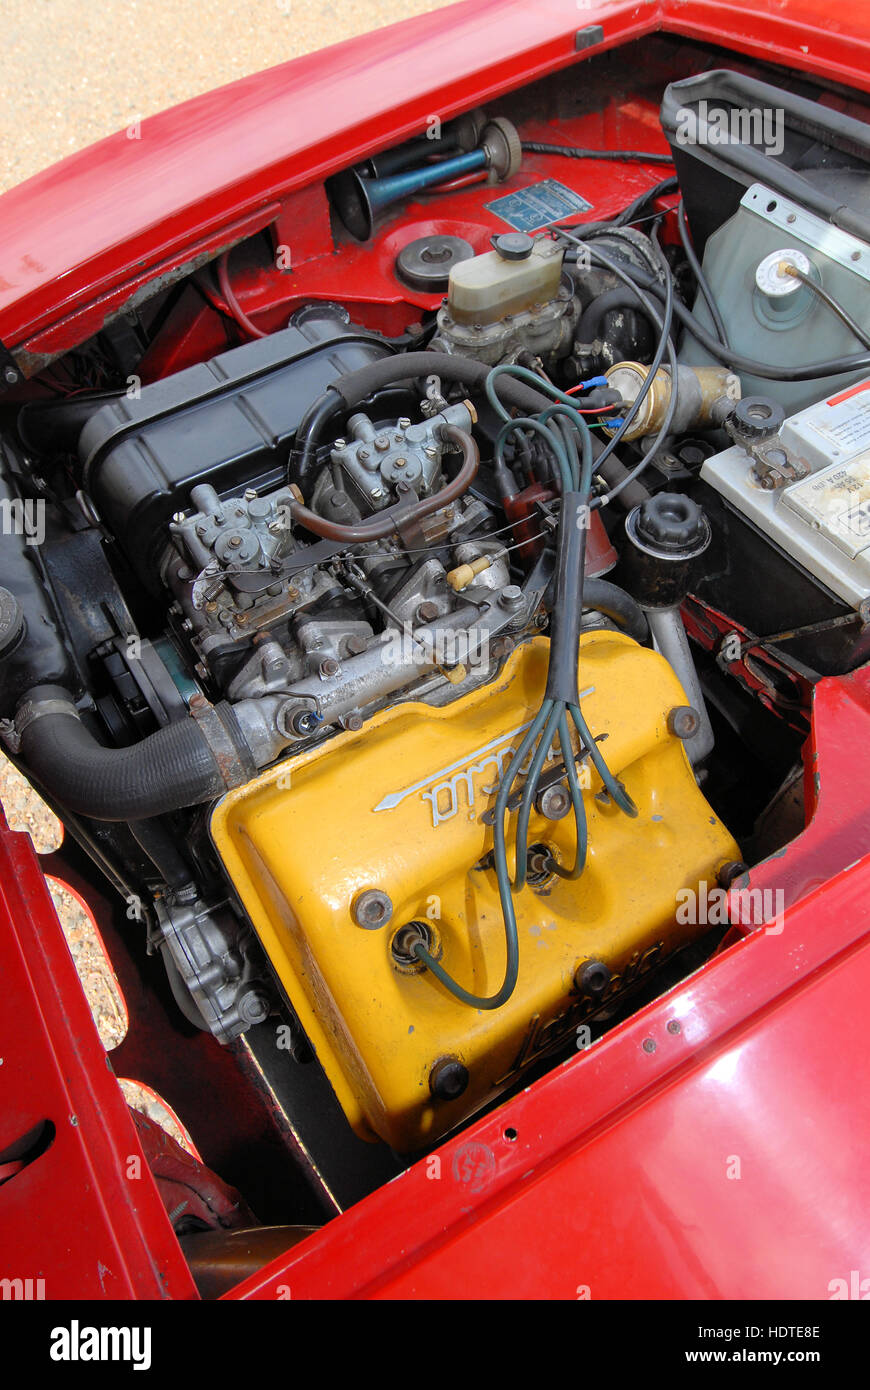 Lancia Fulvia Sport Zagato motore 1600 Foto stock - Alamy